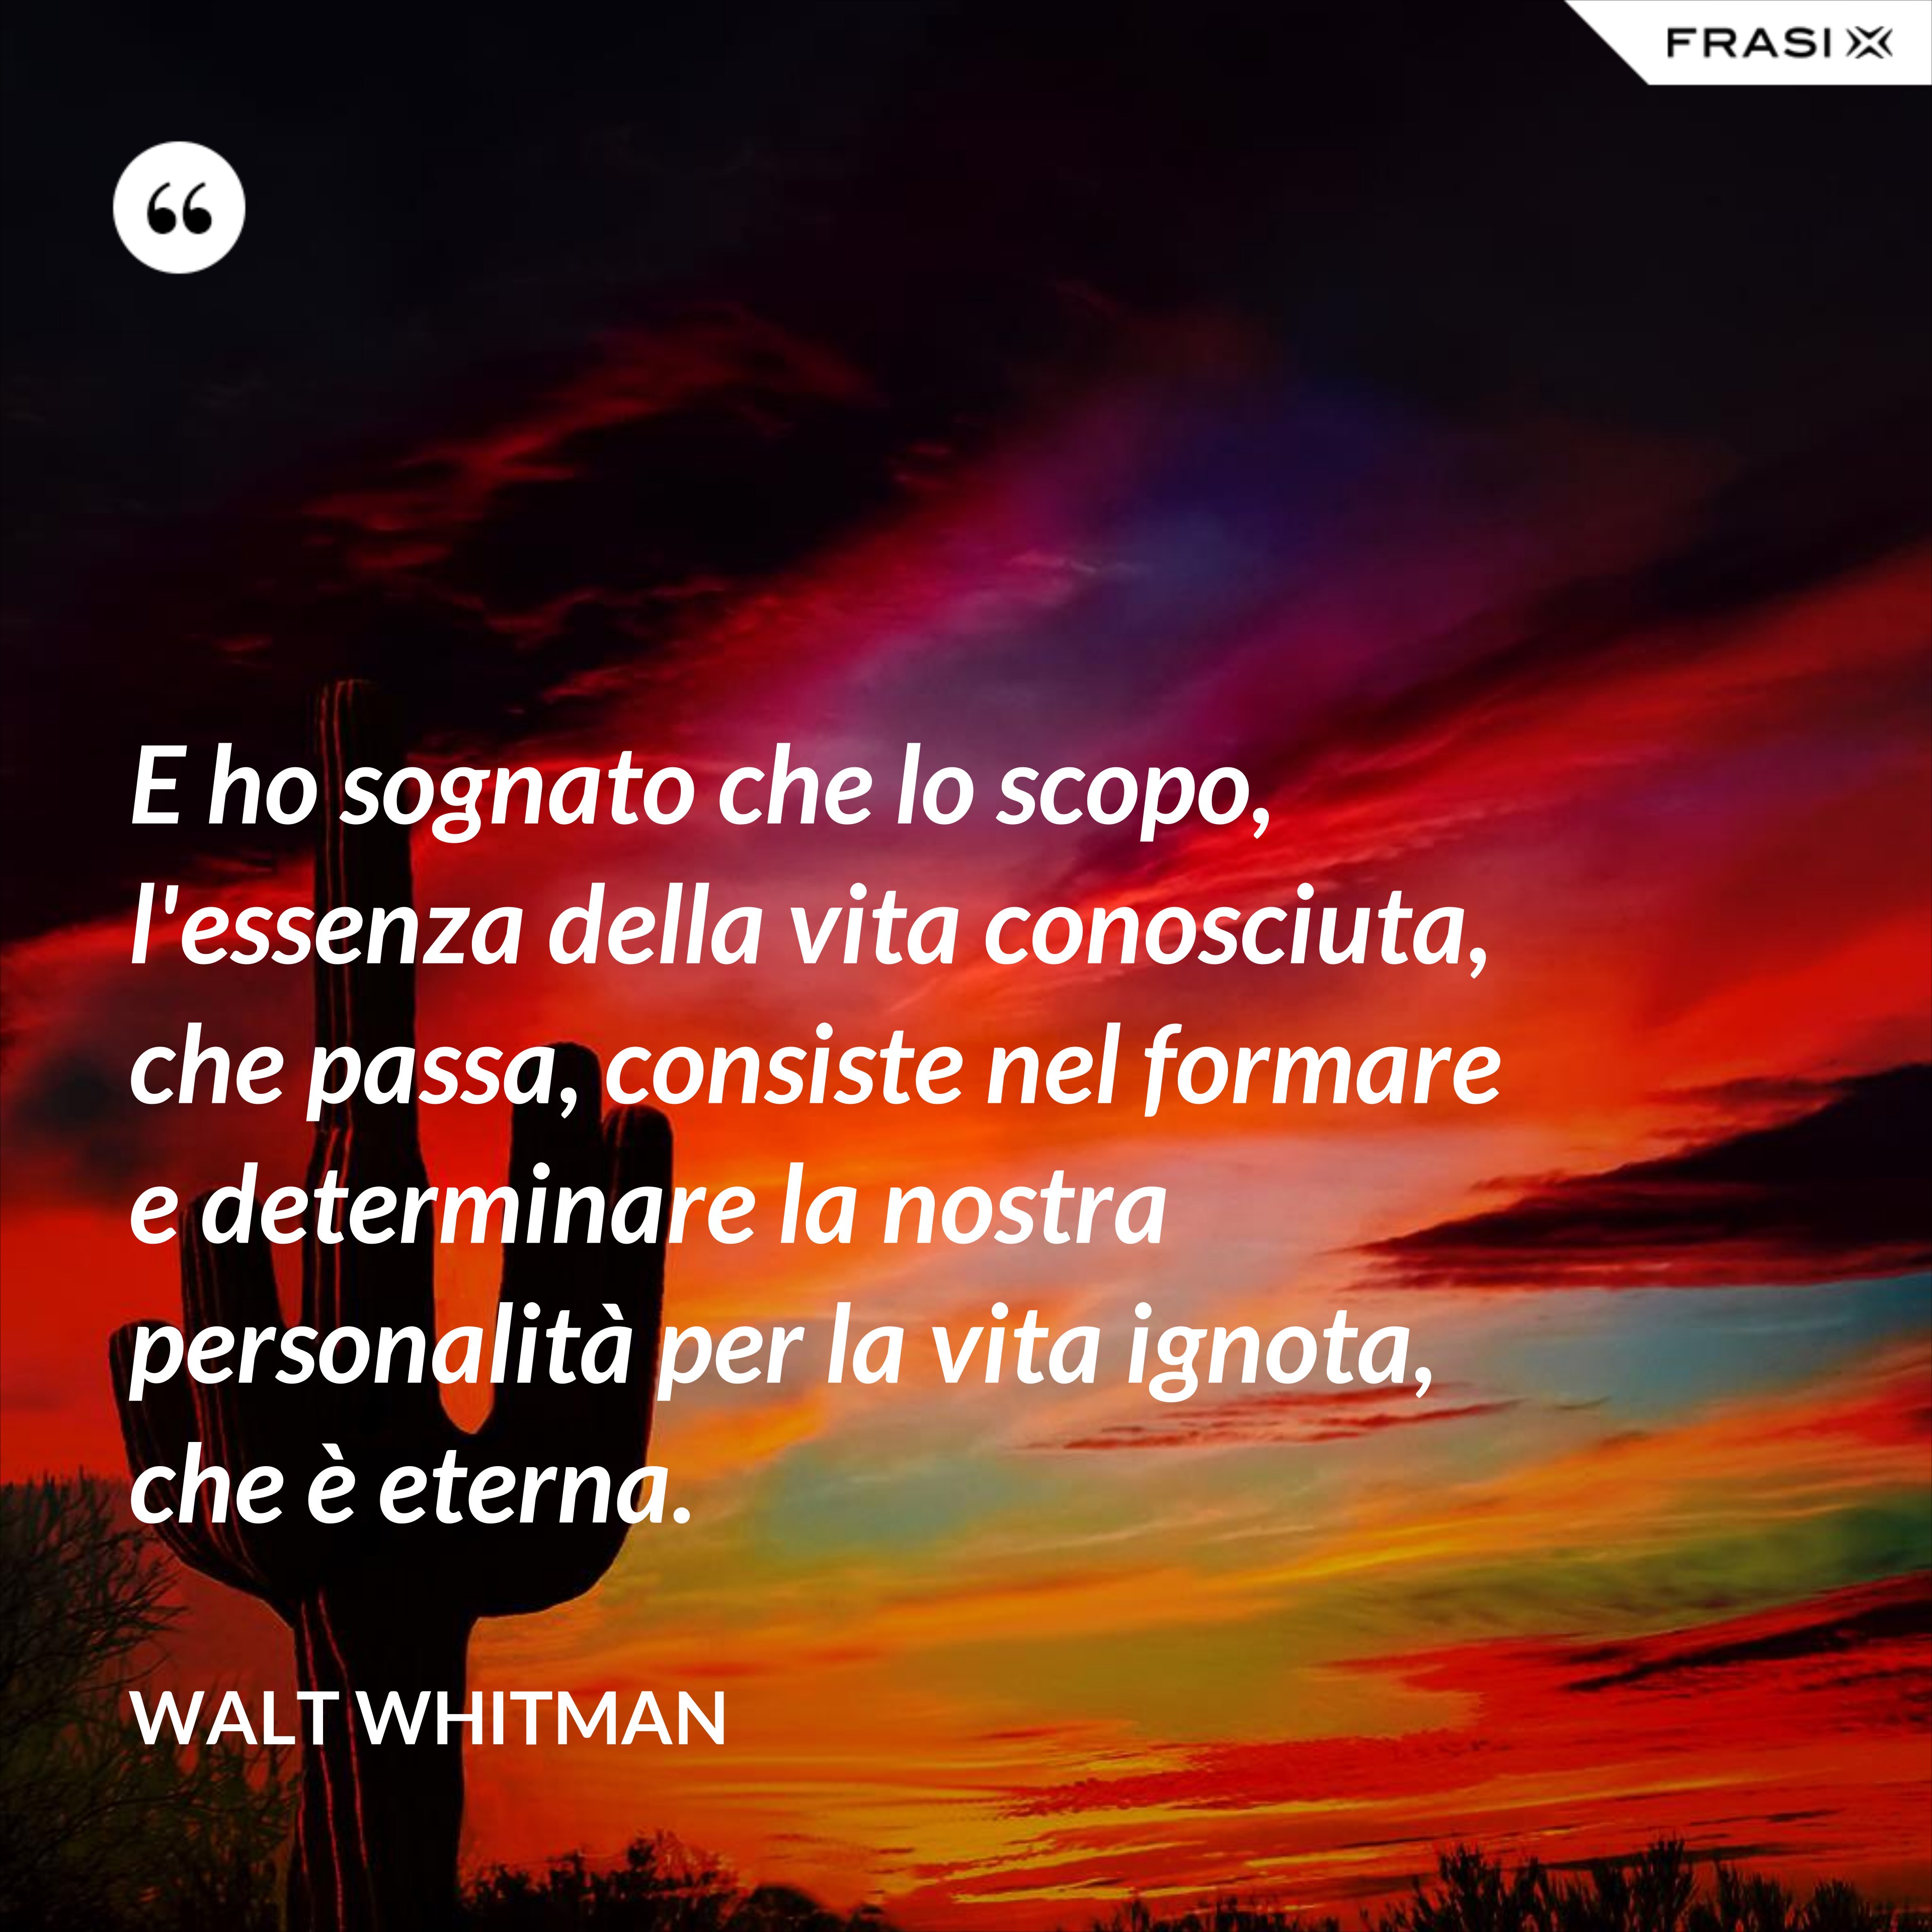 E ho sognato che lo scopo, l'essenza della vita conosciuta, che passa, consiste nel formare e determinare la nostra personalità per la vita ignota, che è eterna. - Walt Whitman